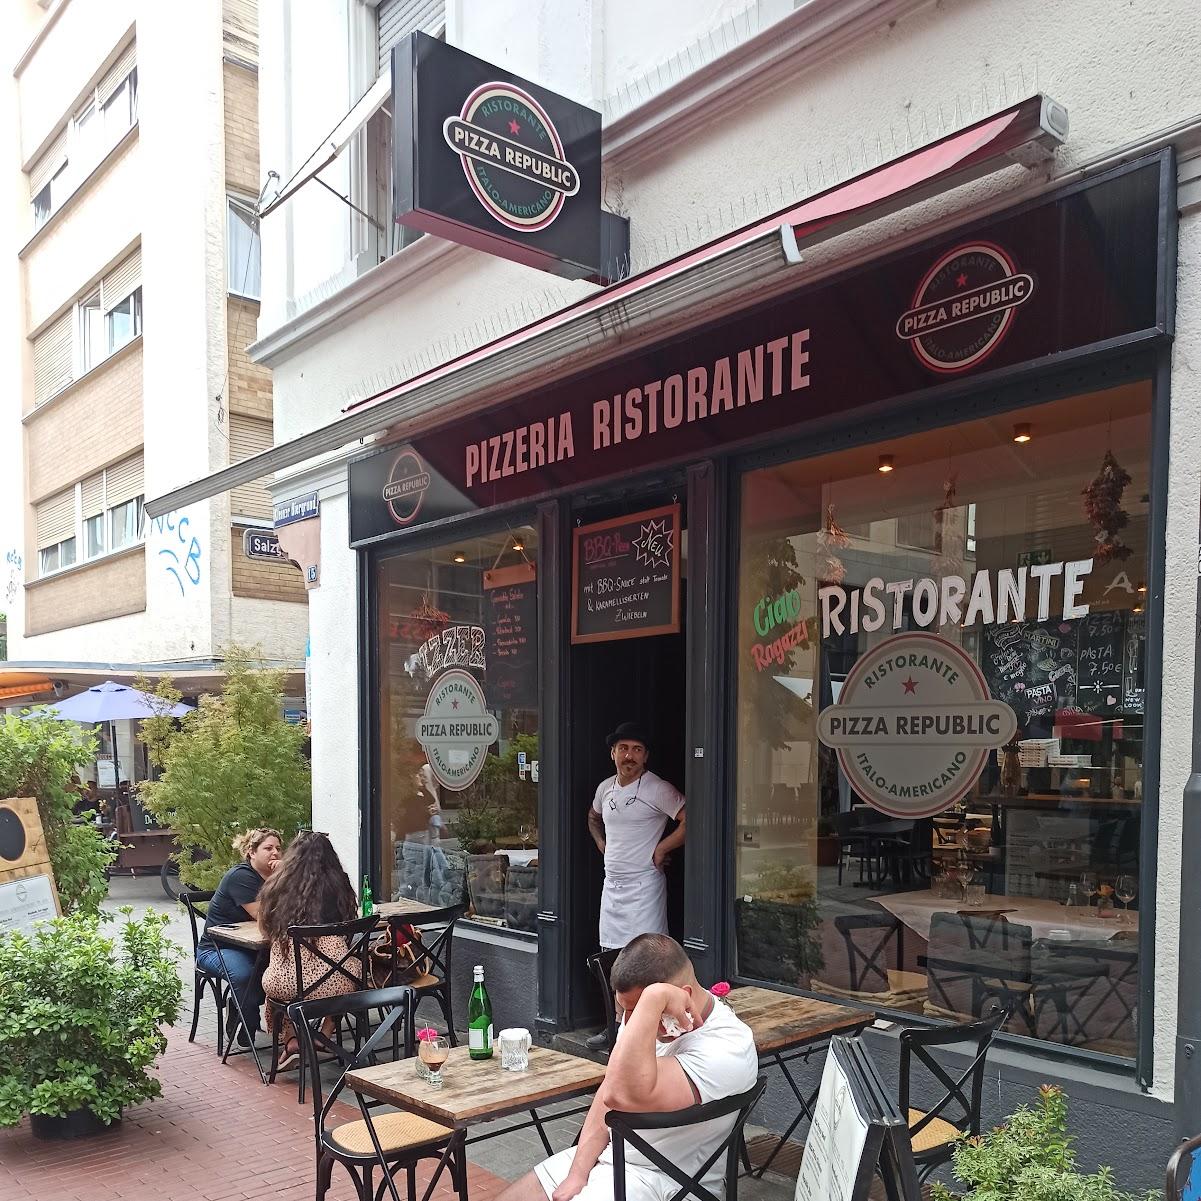 Restaurant "Ristorante Pizza Republic" in Offenbach am Main